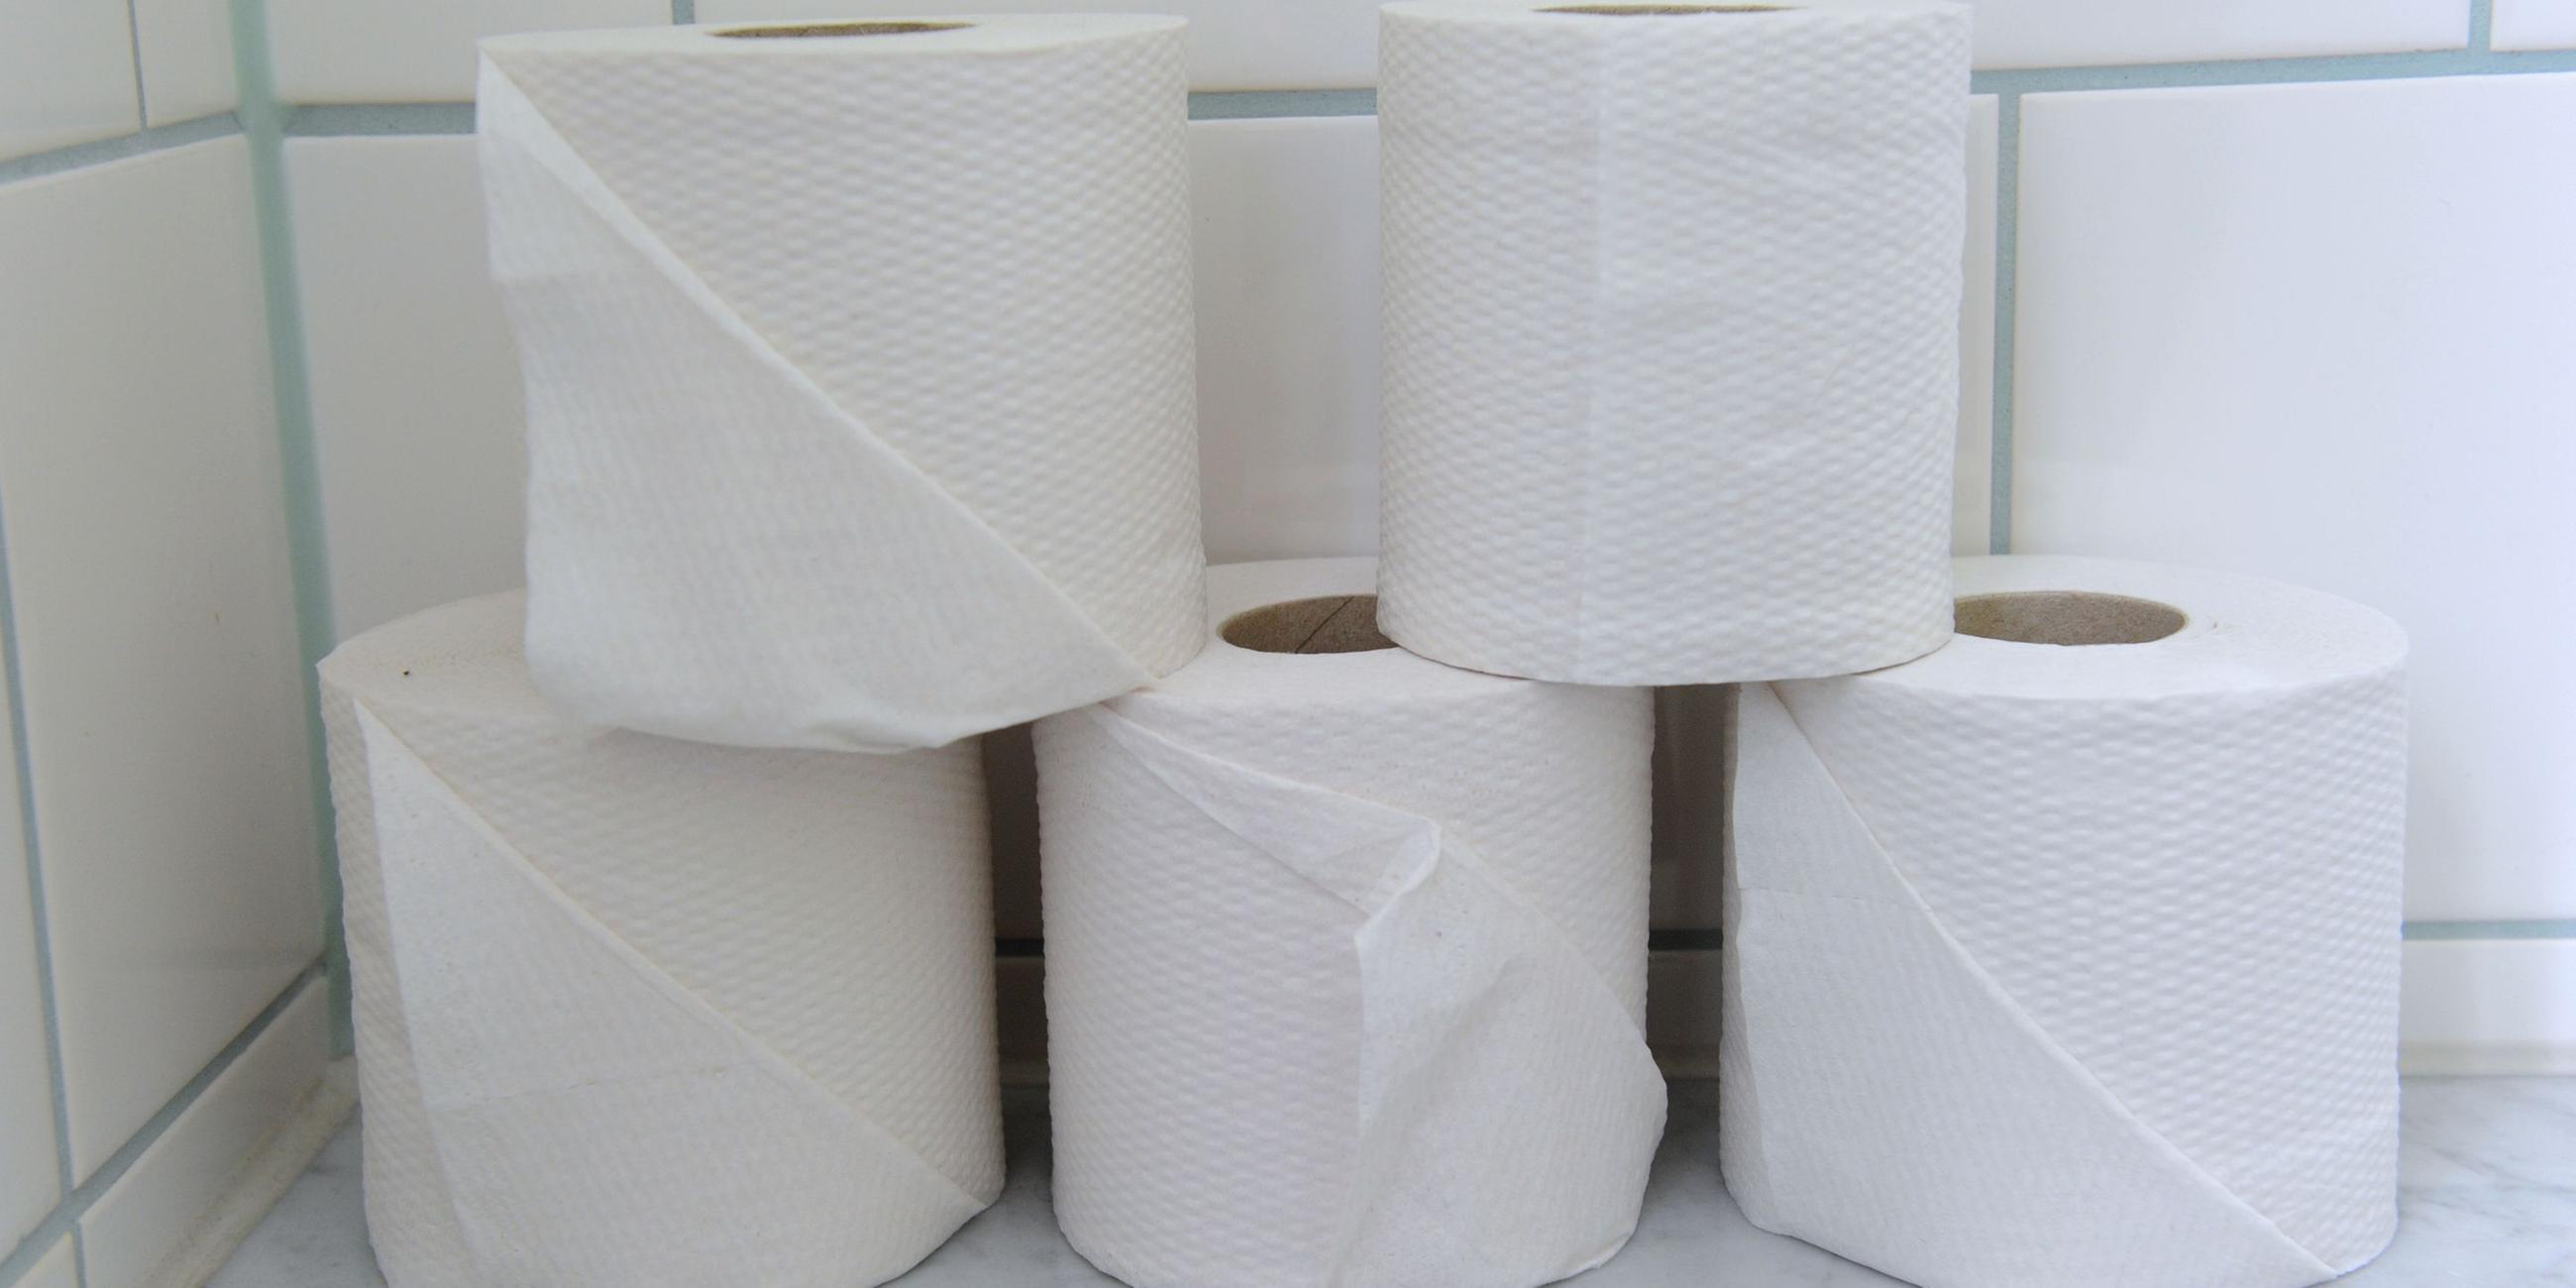 Fünf Rollen Toilettenpapier stehen gestapelt auf einer Ablage.